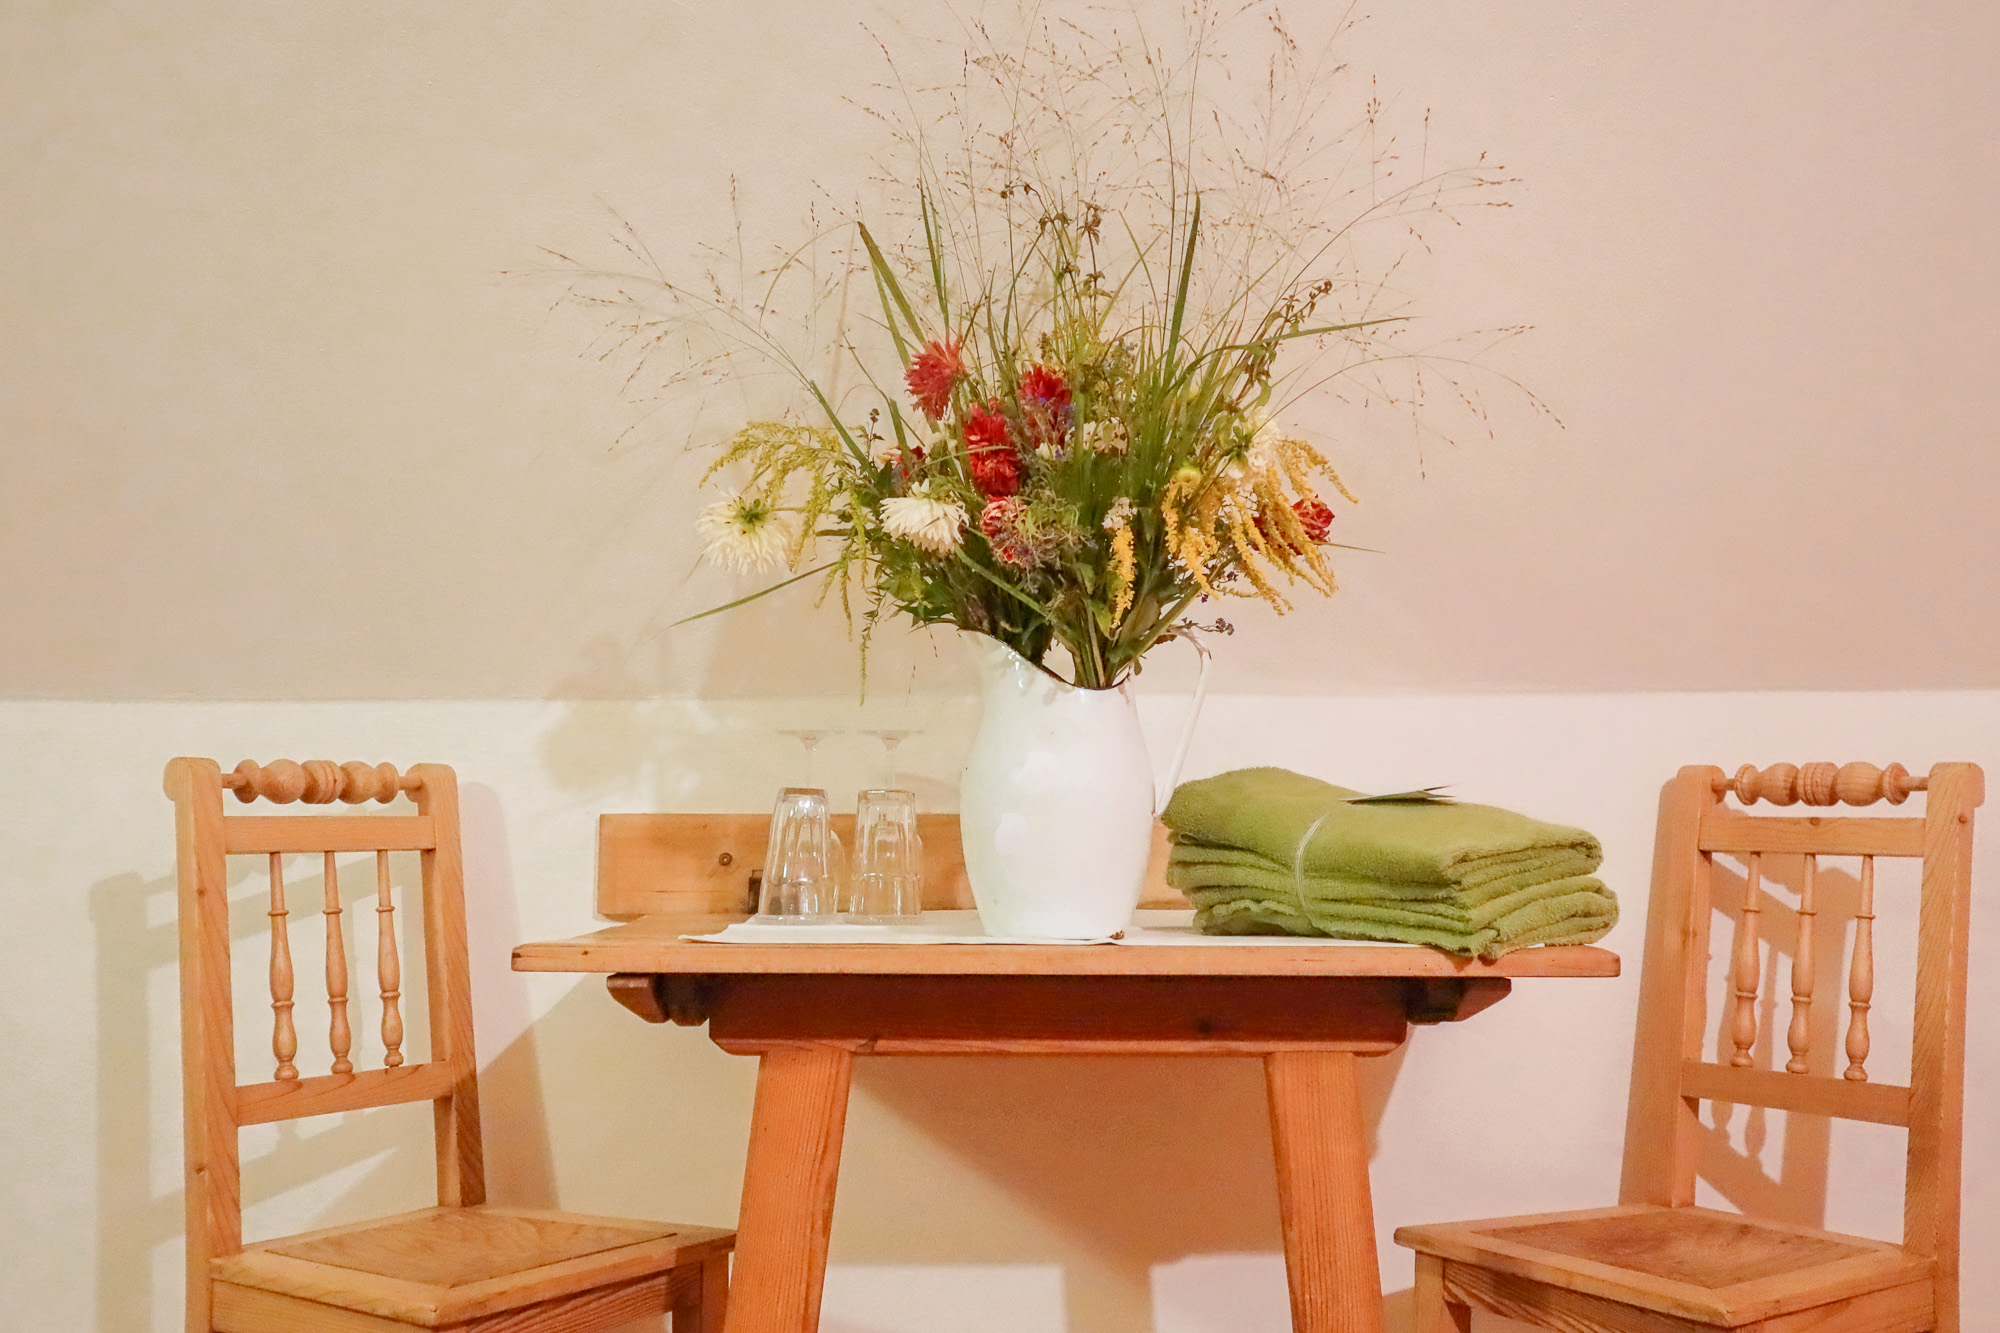 Tisch mit Blumen, Stühlen daneben und Tüchern für den Garten in der Landhaus-Suite Kräuterduft